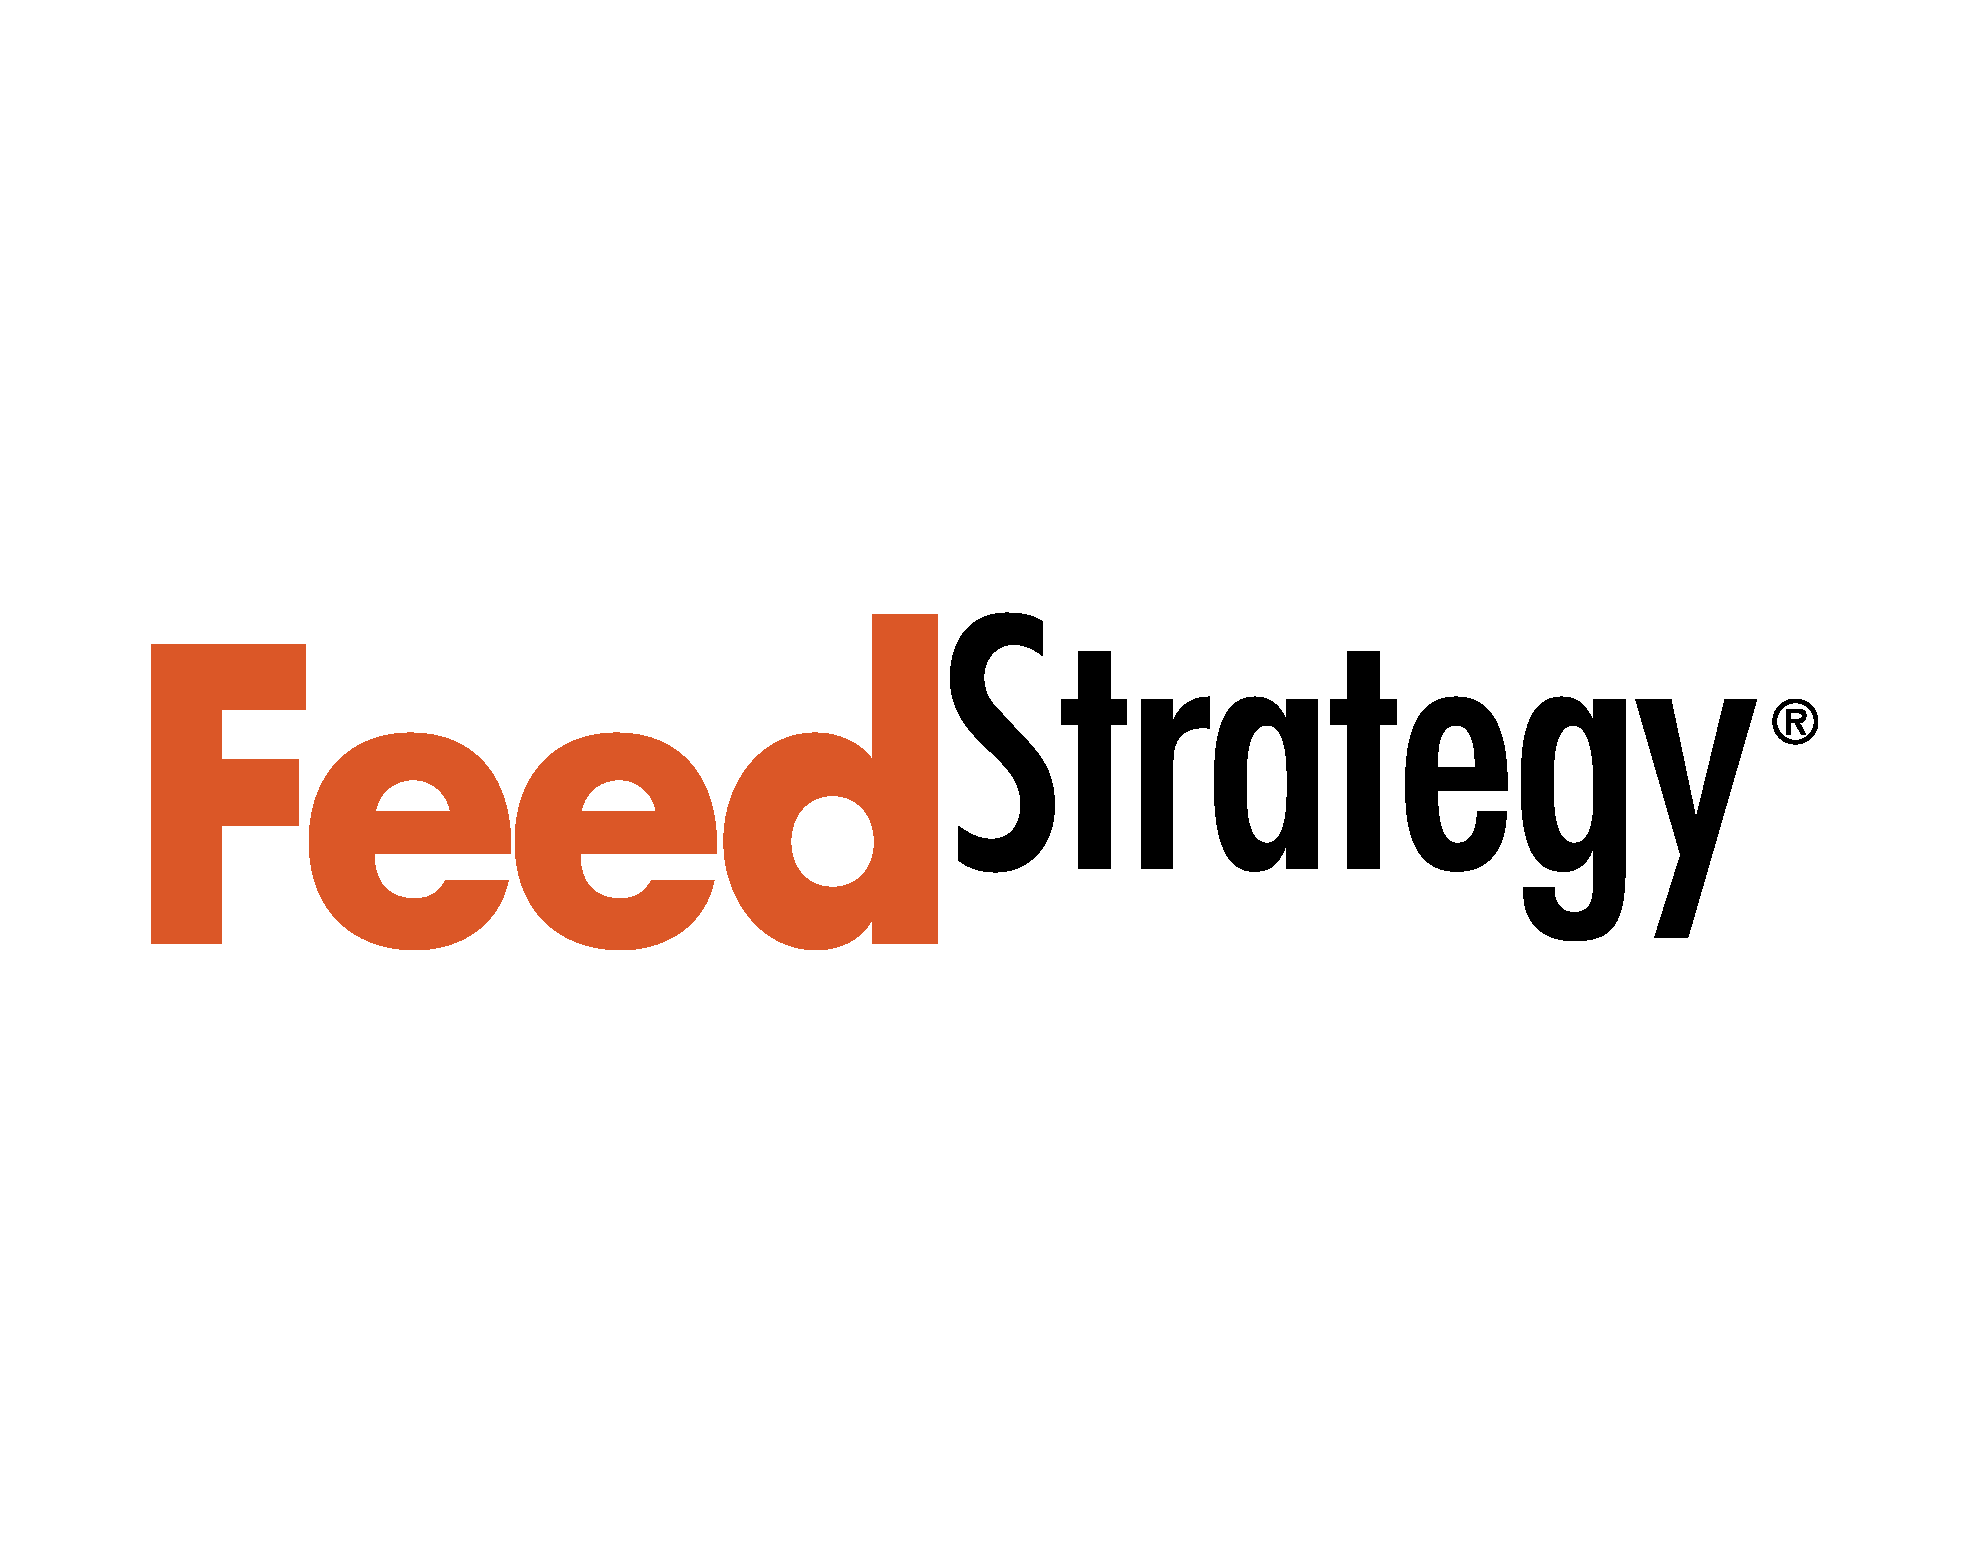 FeedStrategy.com